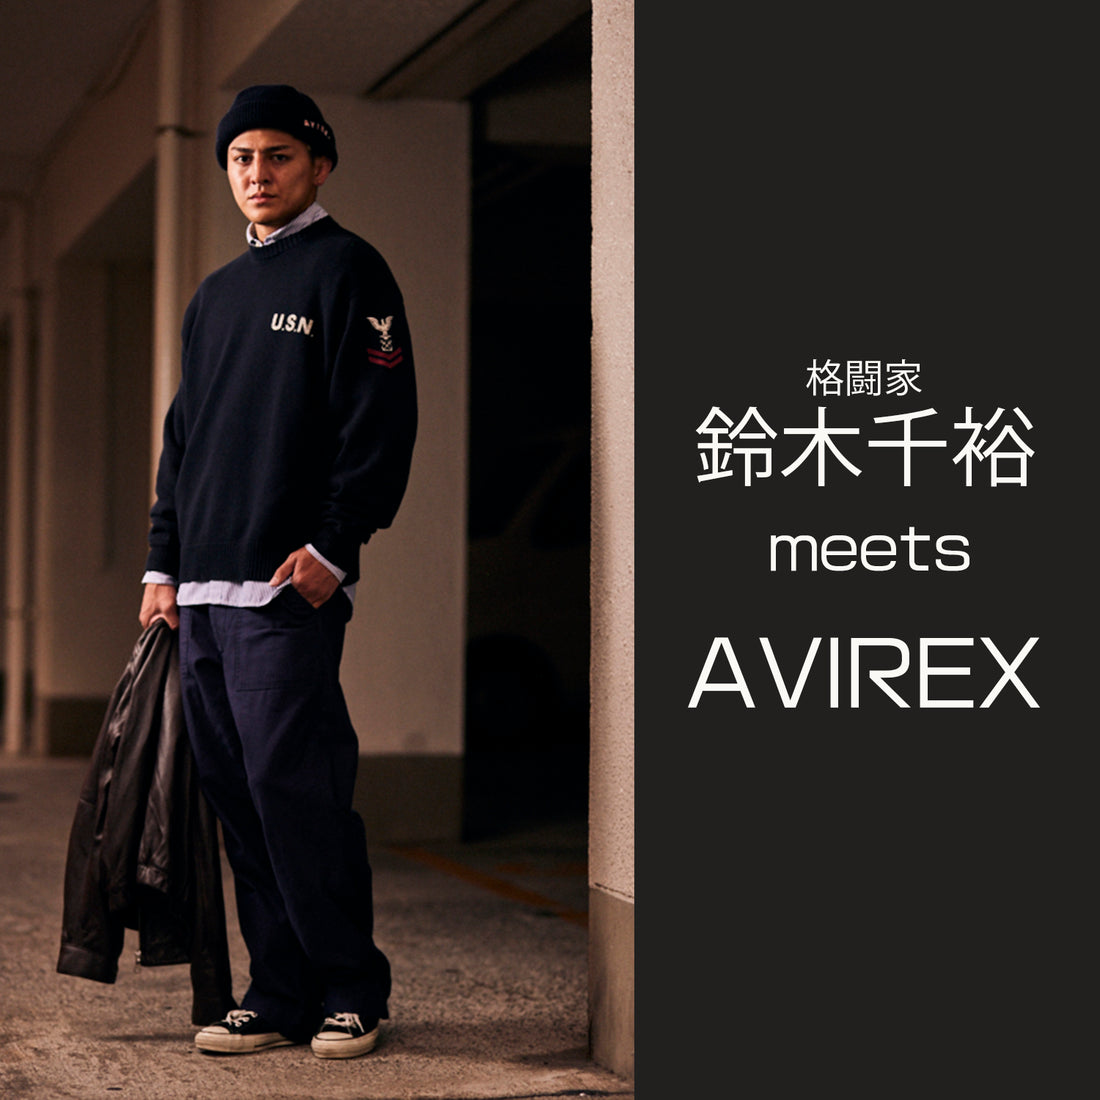 鈴木千裕 meets AVIREX